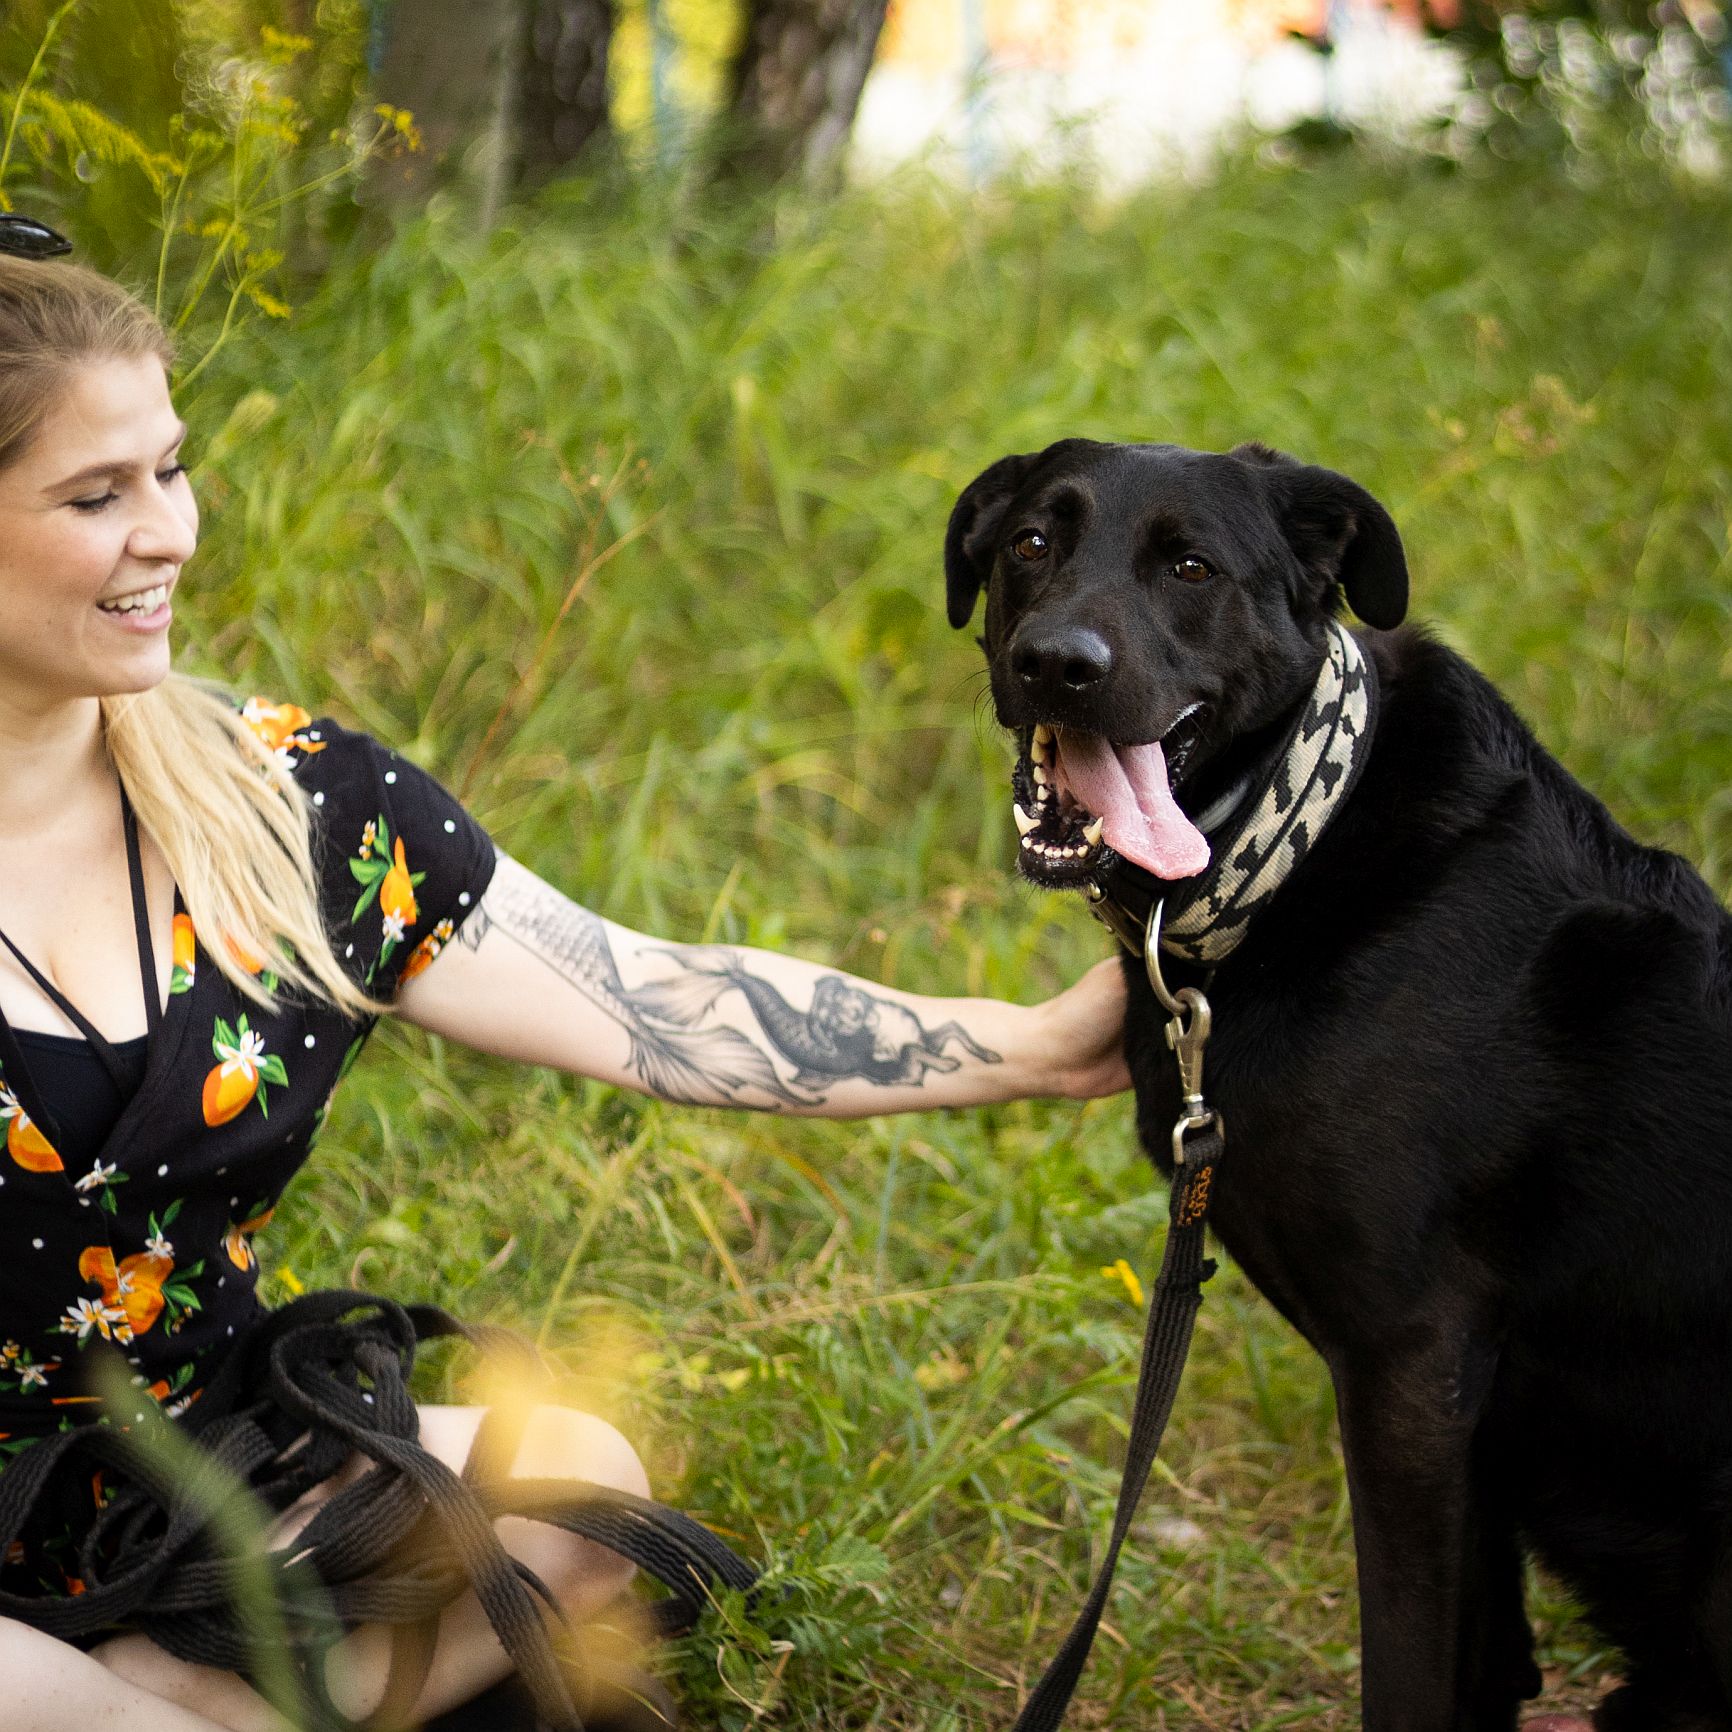 Po lewej stronie na trawie siedzi młoda blondynka, ubrana w ciemną sukienkę. Lewą ręką dotyka dużego czarnego psa. Pies patrzy prosto w obiektyw. 